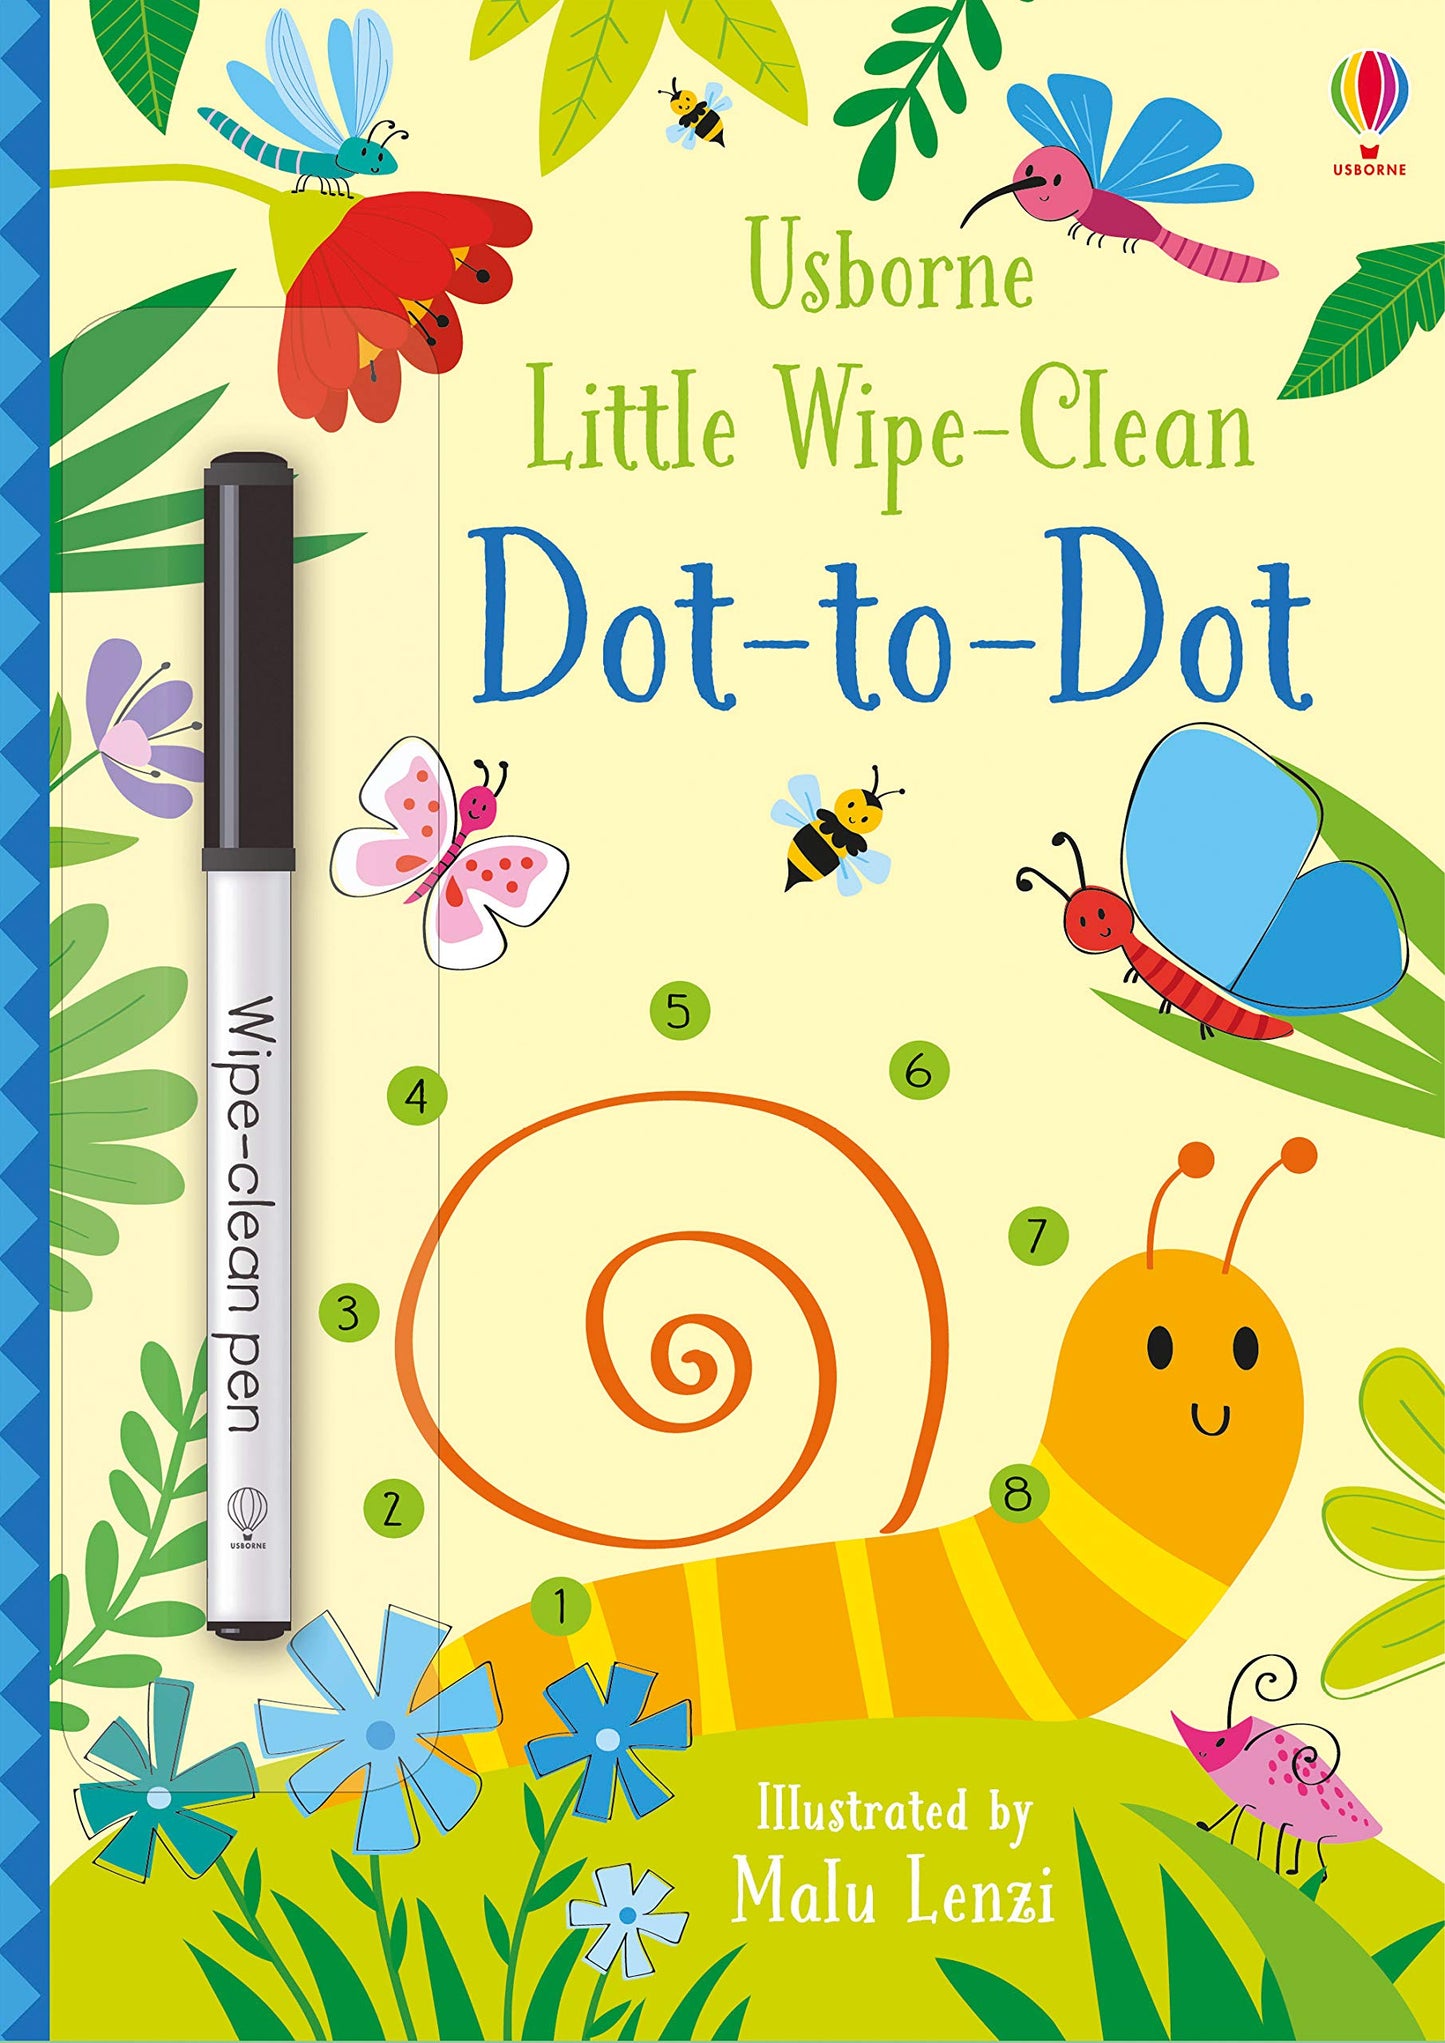 Little Wipe-Clean: Dot-to-Dot by Usborne